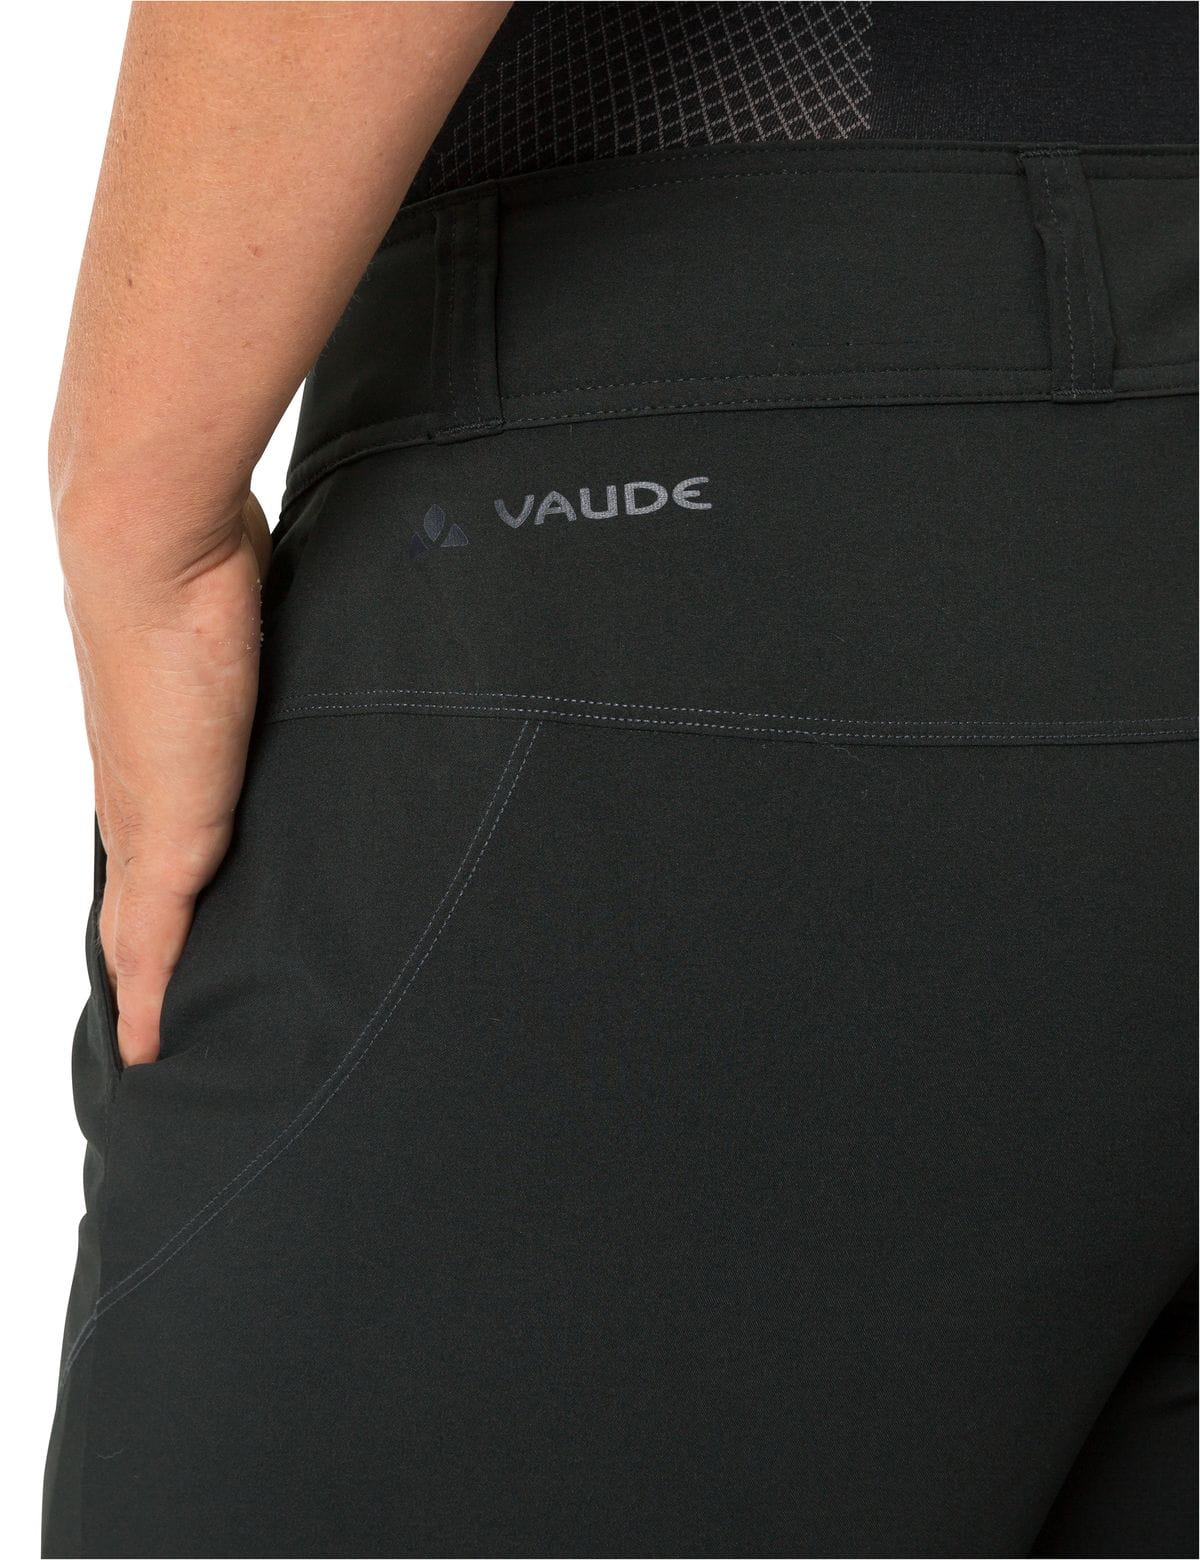 VAUDE Womens Ledro Shorts Bike Shorts with herausnehmbarer Innenhose